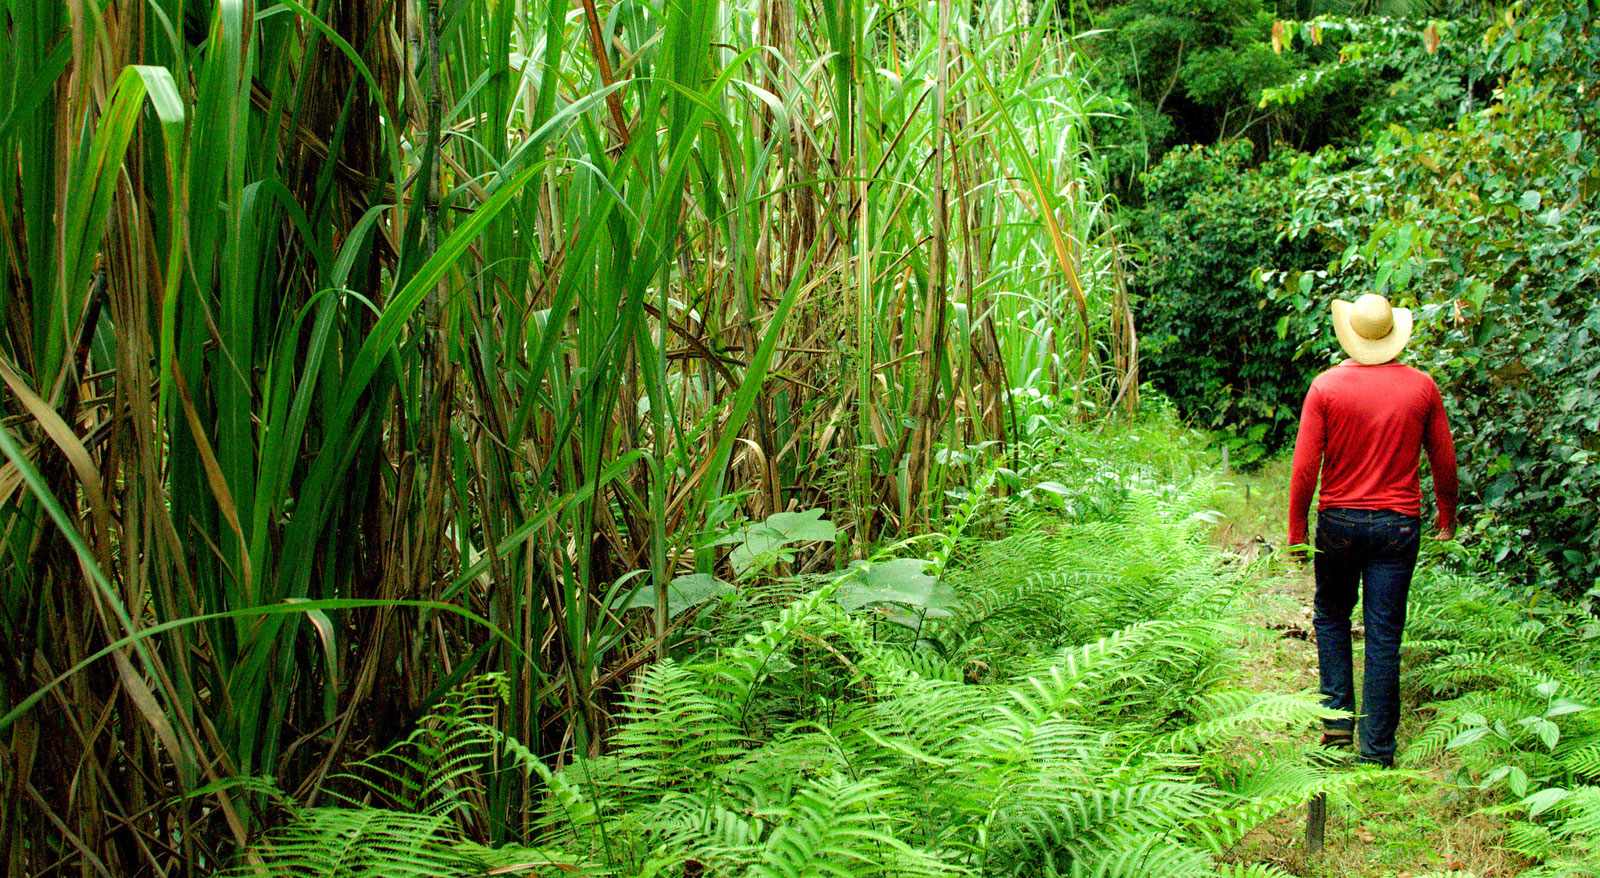 Сахарный тростник содержит. Сахарный тростник в Бразилии. Растение Индии сахарный тростник. Плантации сахарного тростника в Бразилии. Плантация сахарного тростника в Индии.